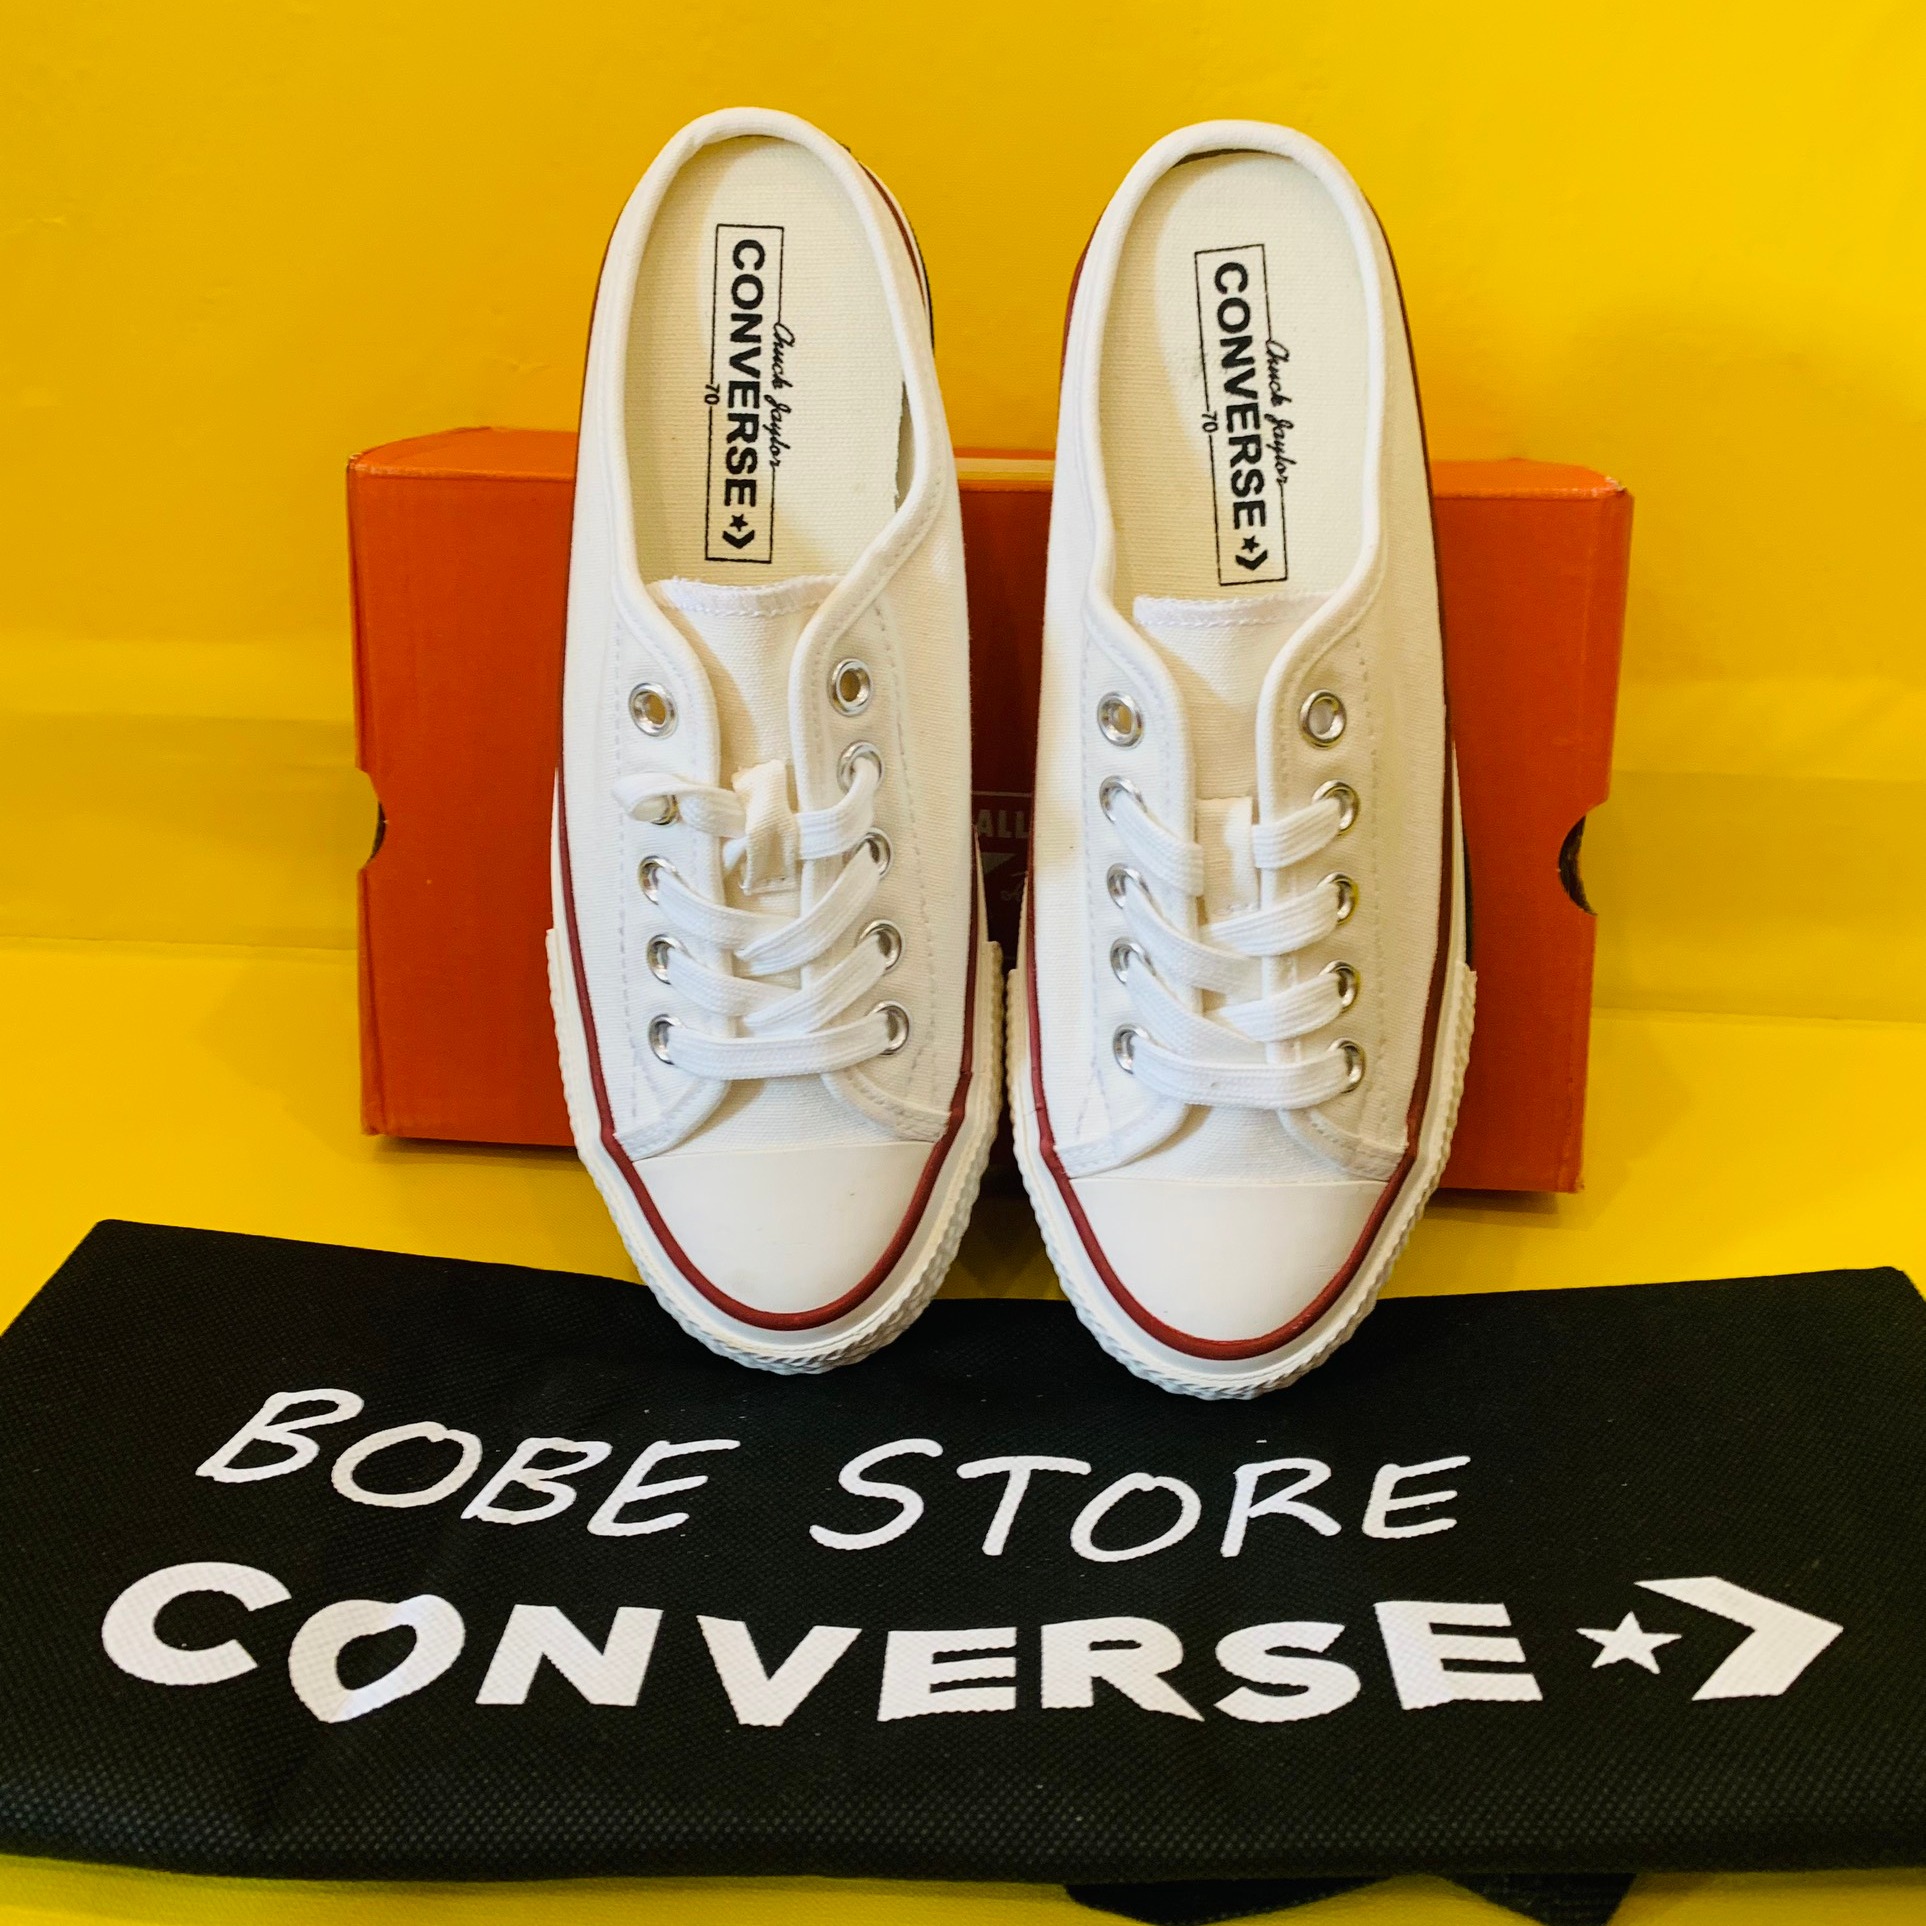 Giày Converse đạp gót đen - Sneaker sục giá rẻ - Góc Của Nhỏ